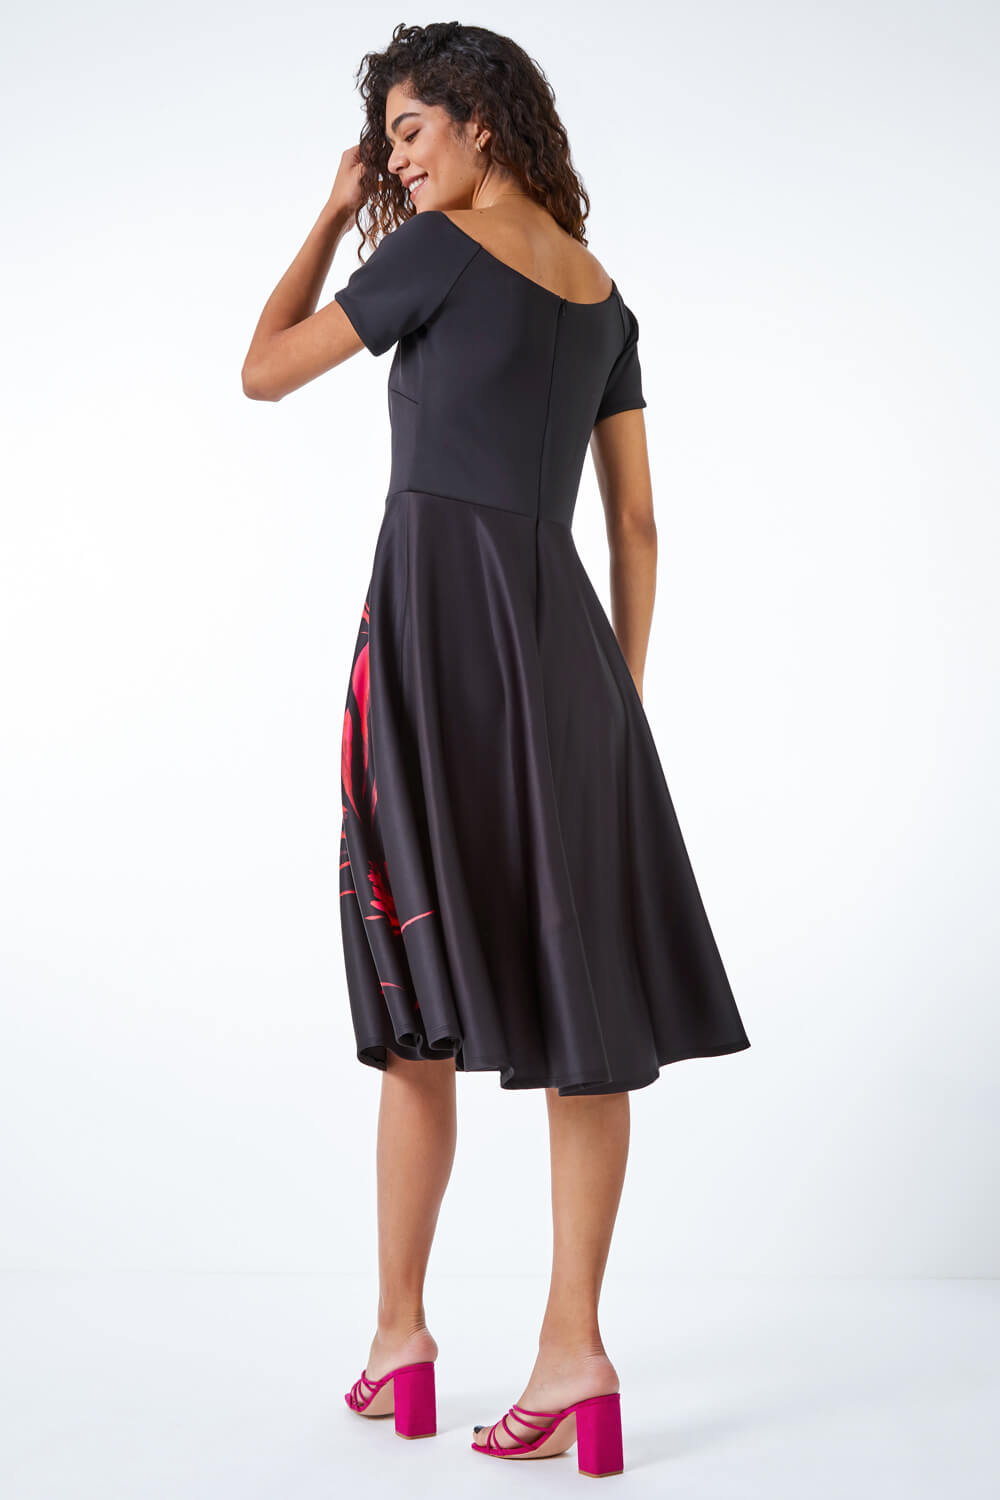 Black Floral Fit & Flare Bardot Dress, Image 3 of 5